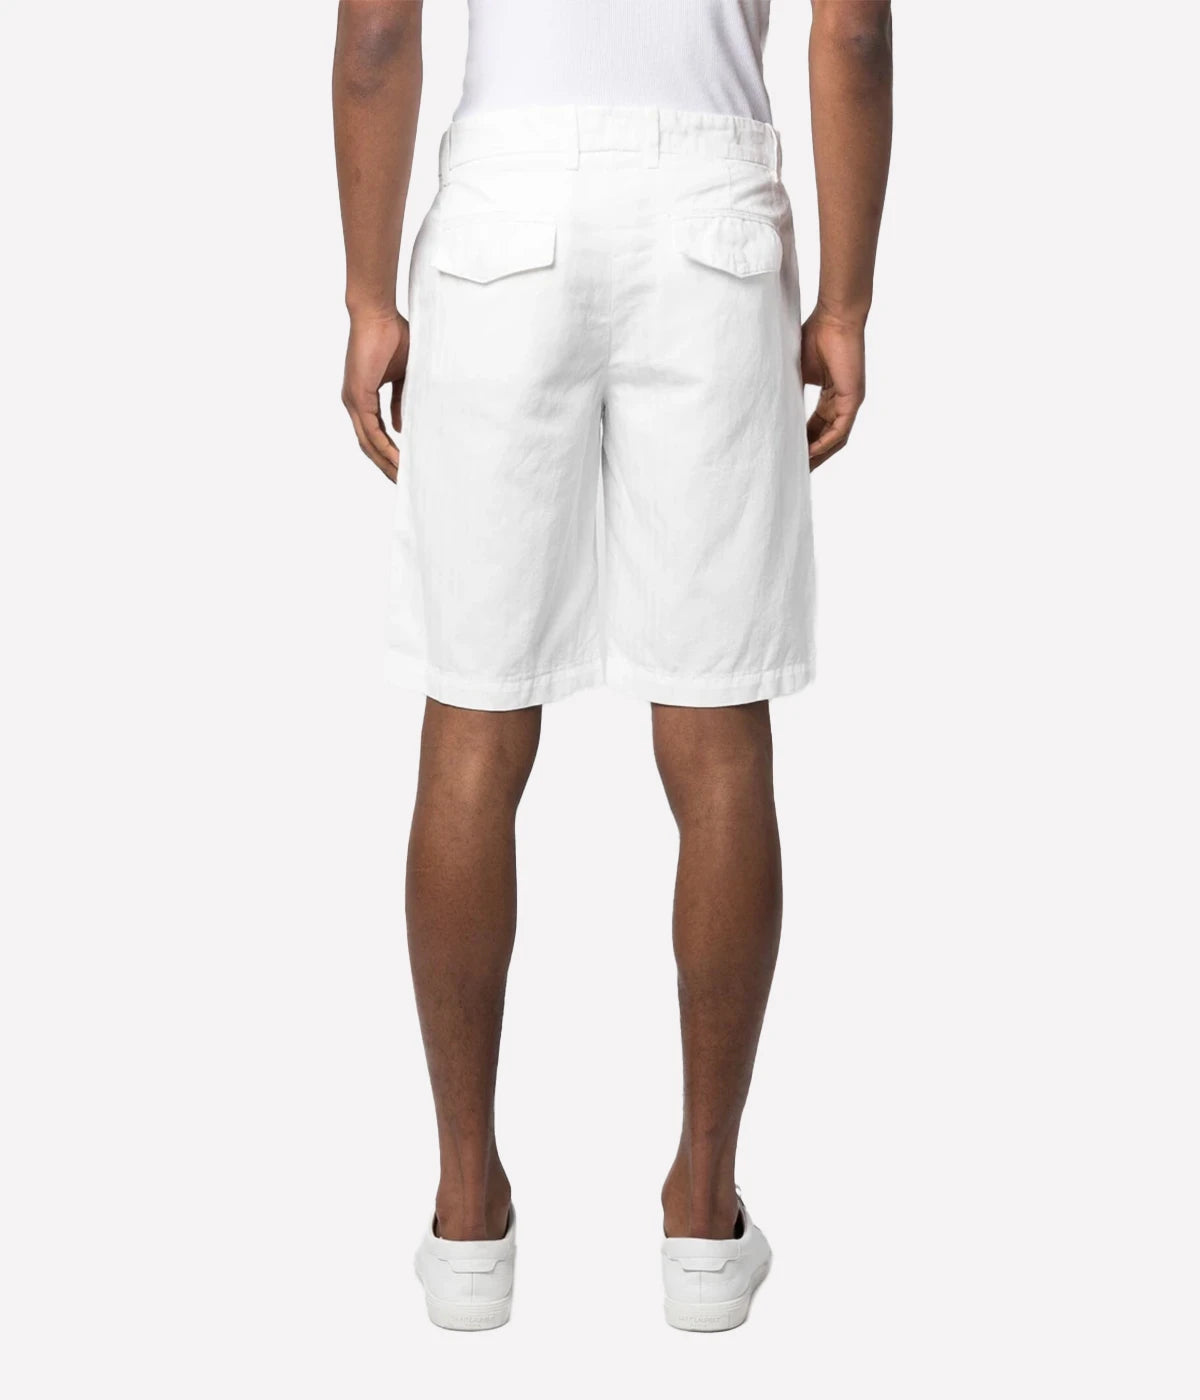 Bermuda Shorts in White